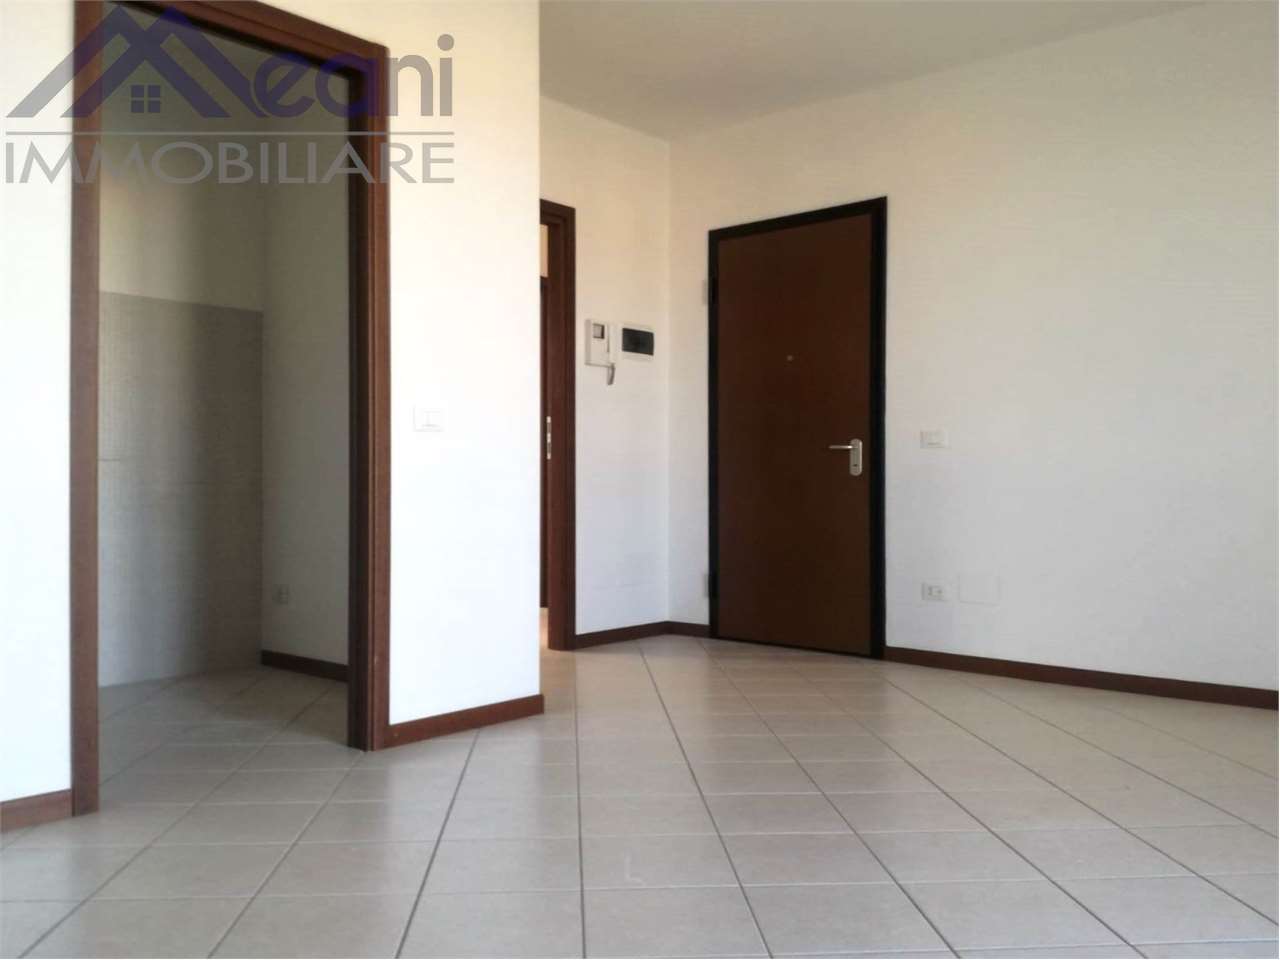 Appartamento in vendita a Landriano, 2 locali, prezzo € 135.300 | PortaleAgenzieImmobiliari.it